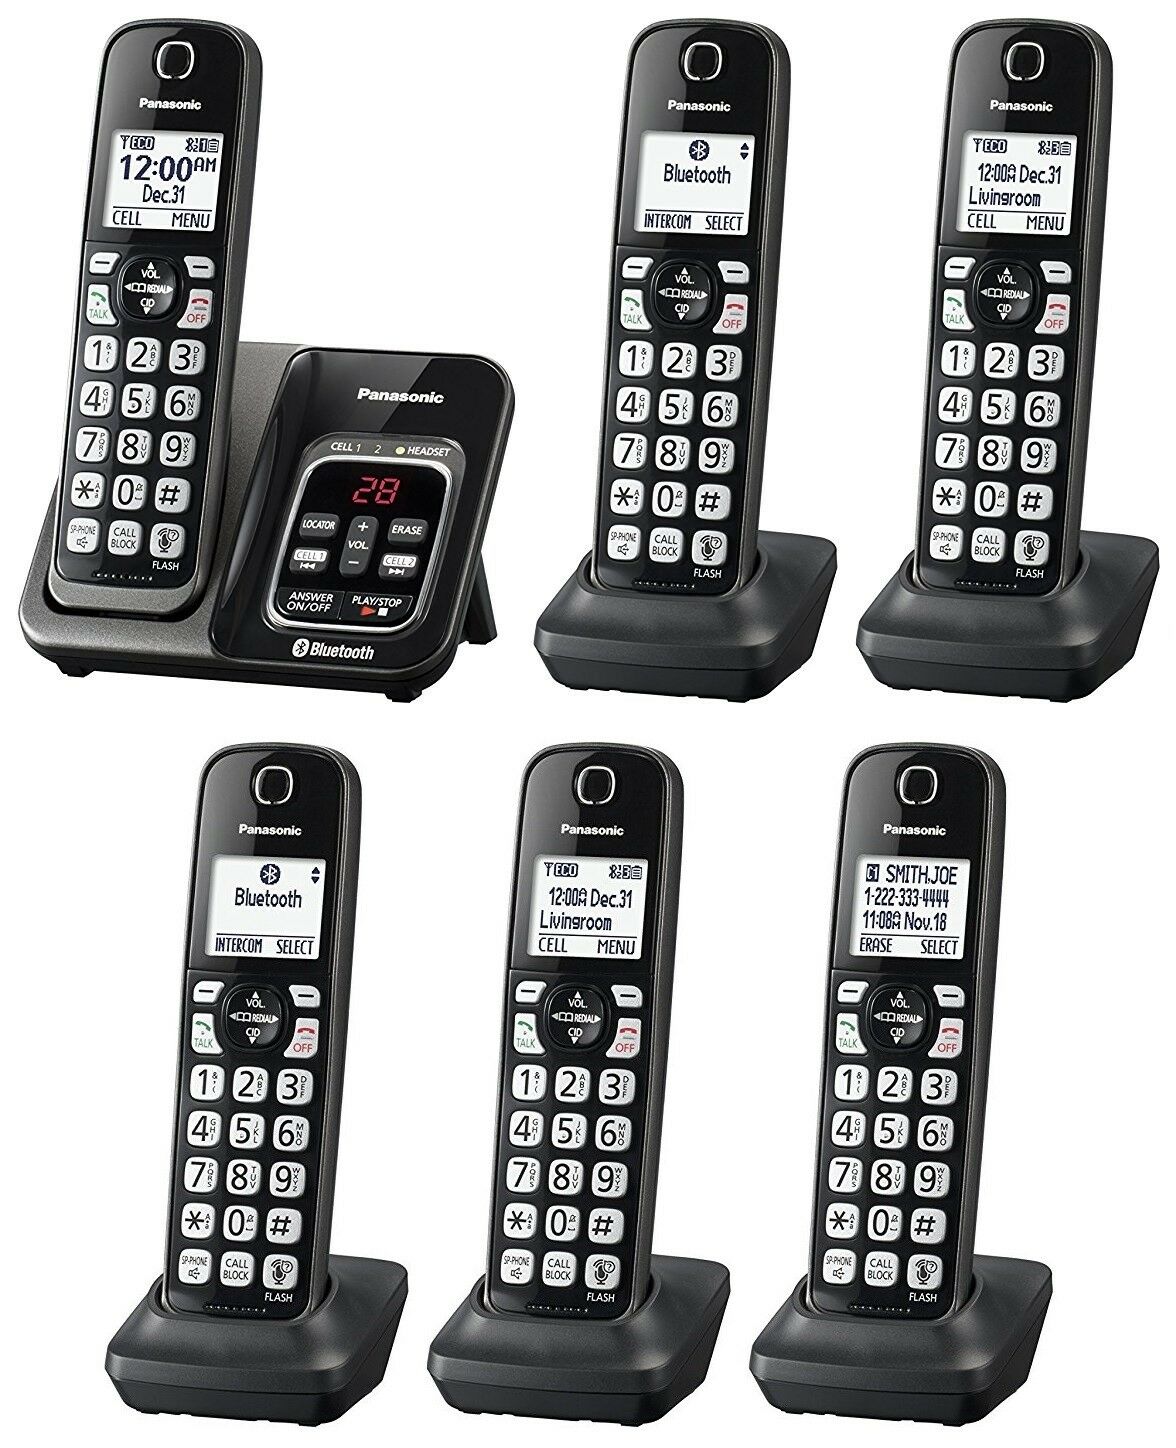 Panasonic Kx-tgd564m Plus Two Kx-tgda51m Bluetooth Cordless Phone - 6 Handsets!